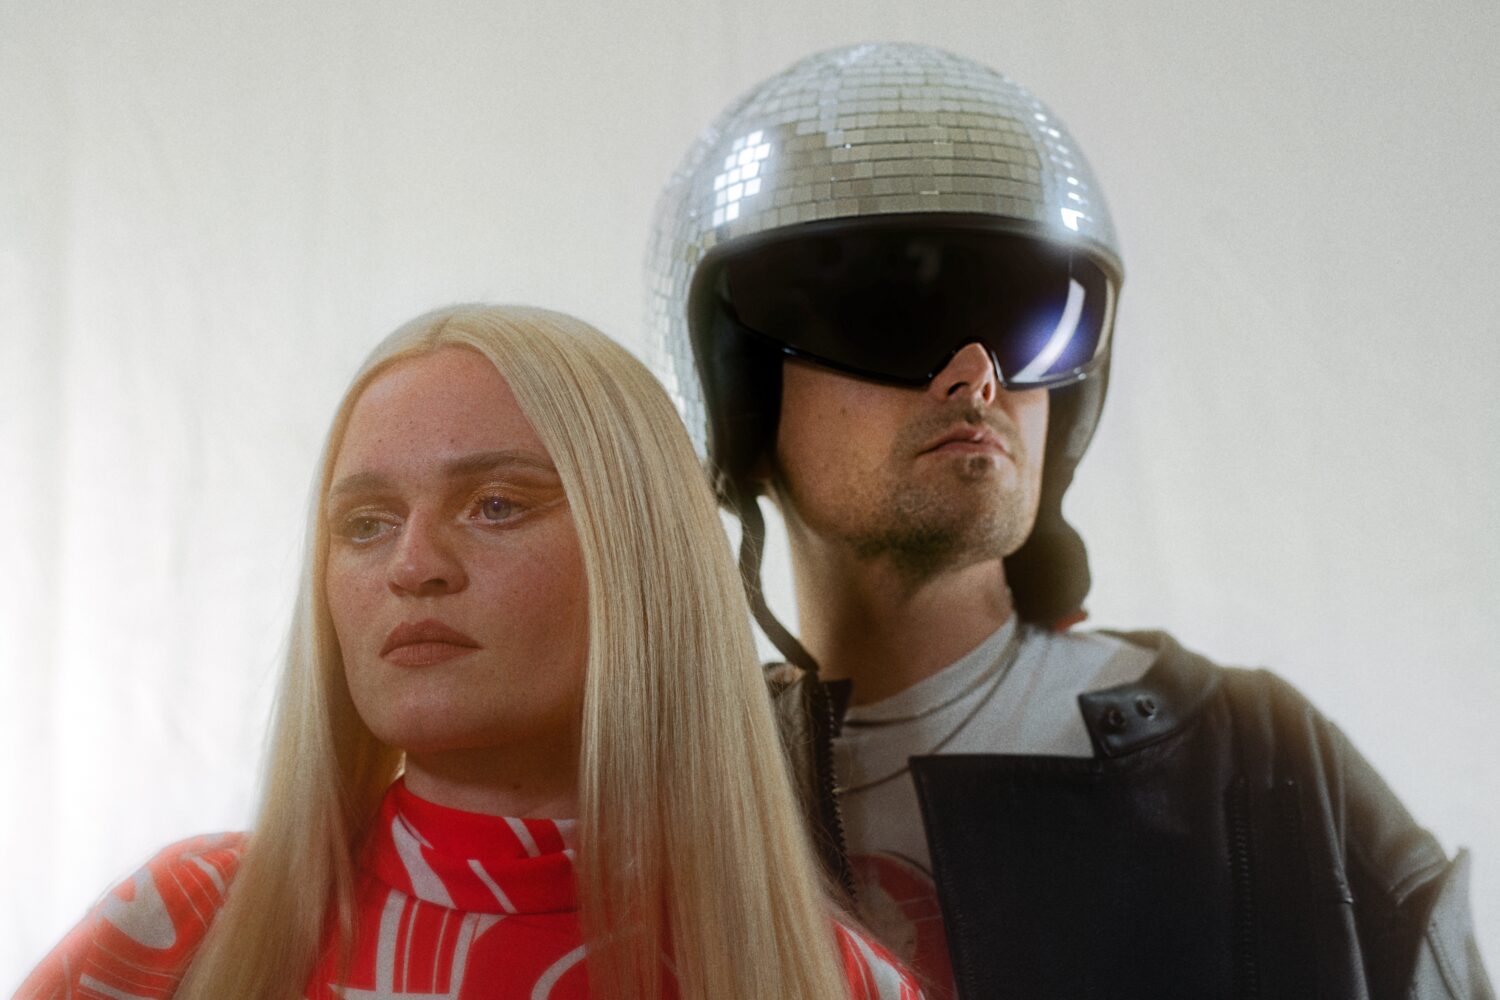 Ein Bild von einer blonden Frau im roten Kleid und einem Mann mit Sonnenbrille und Helm. Der Helm ist eine Discokugel.